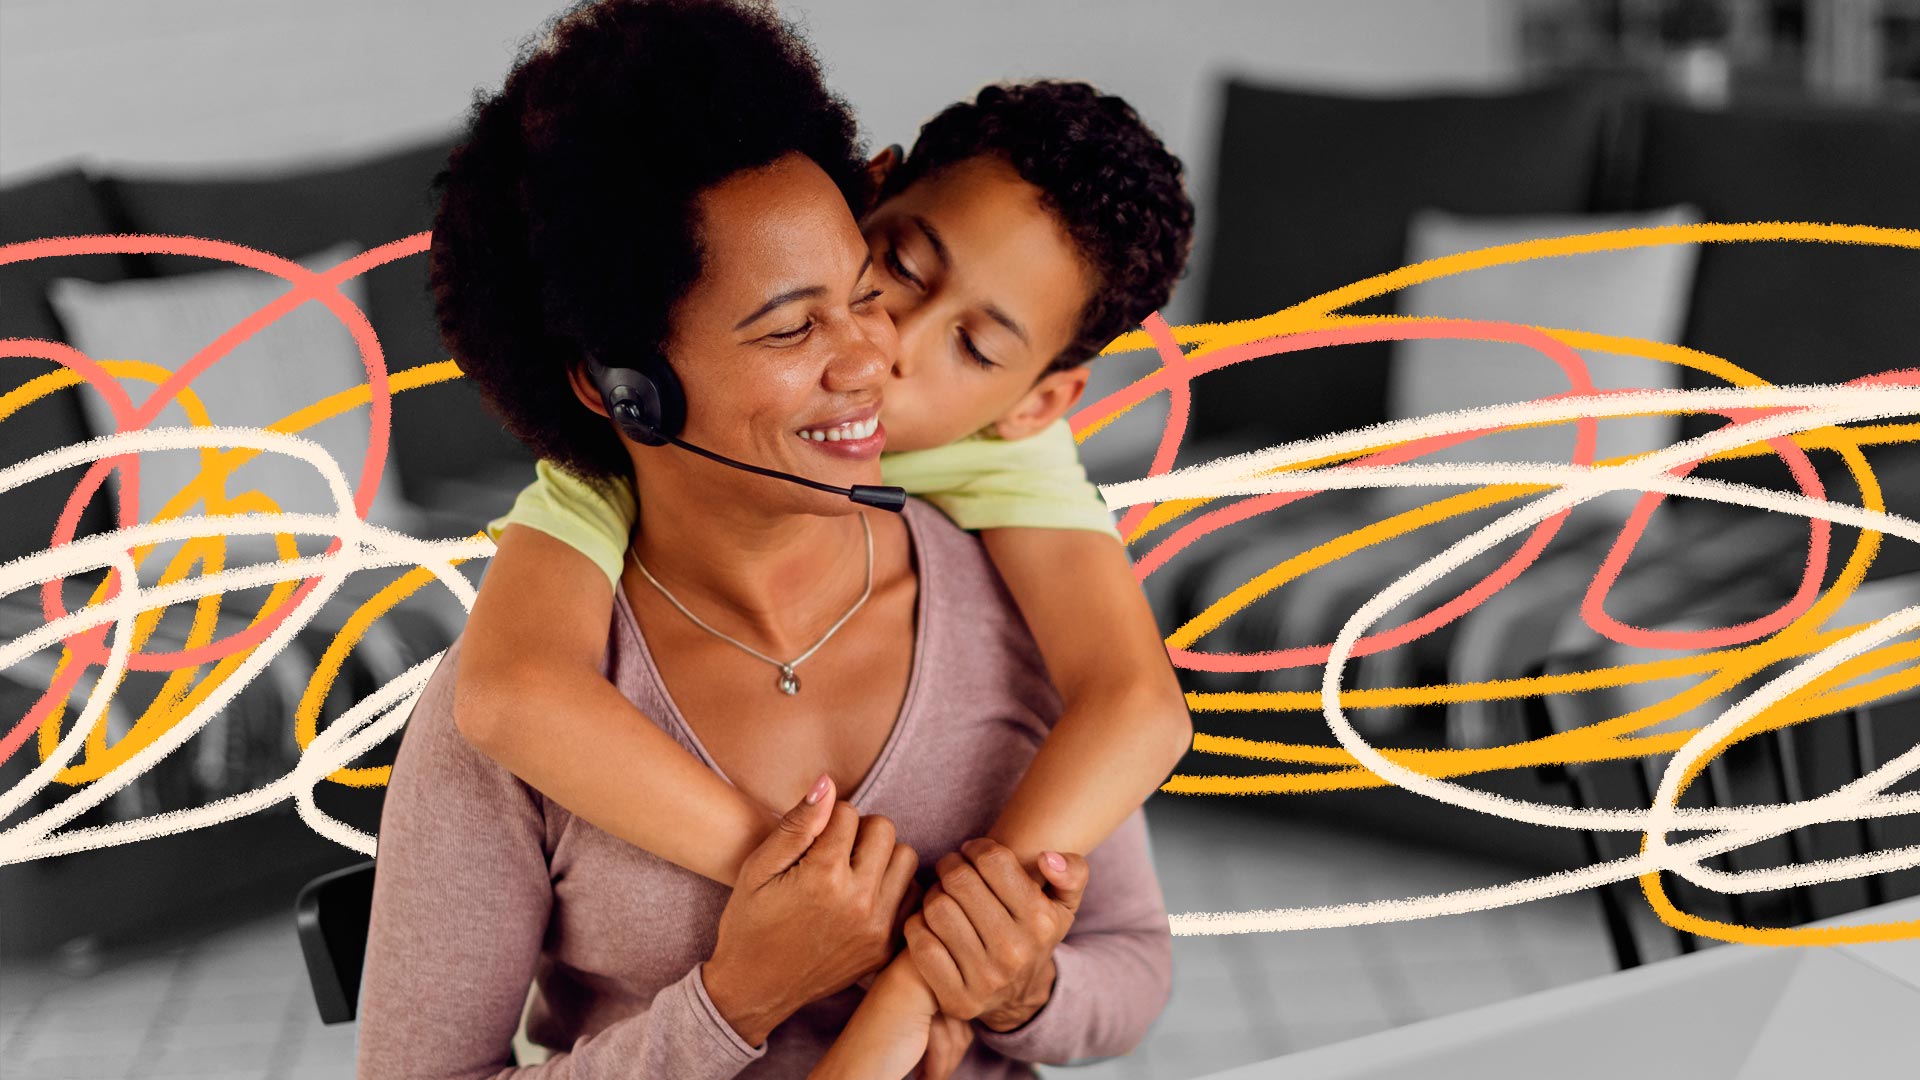 Empresas family-friendly: uma mãe usando um fone de ouvido com microfone, sentada em frente a um computador, recebe um abraço e um beijo de seu filho, que a abraça por trás.